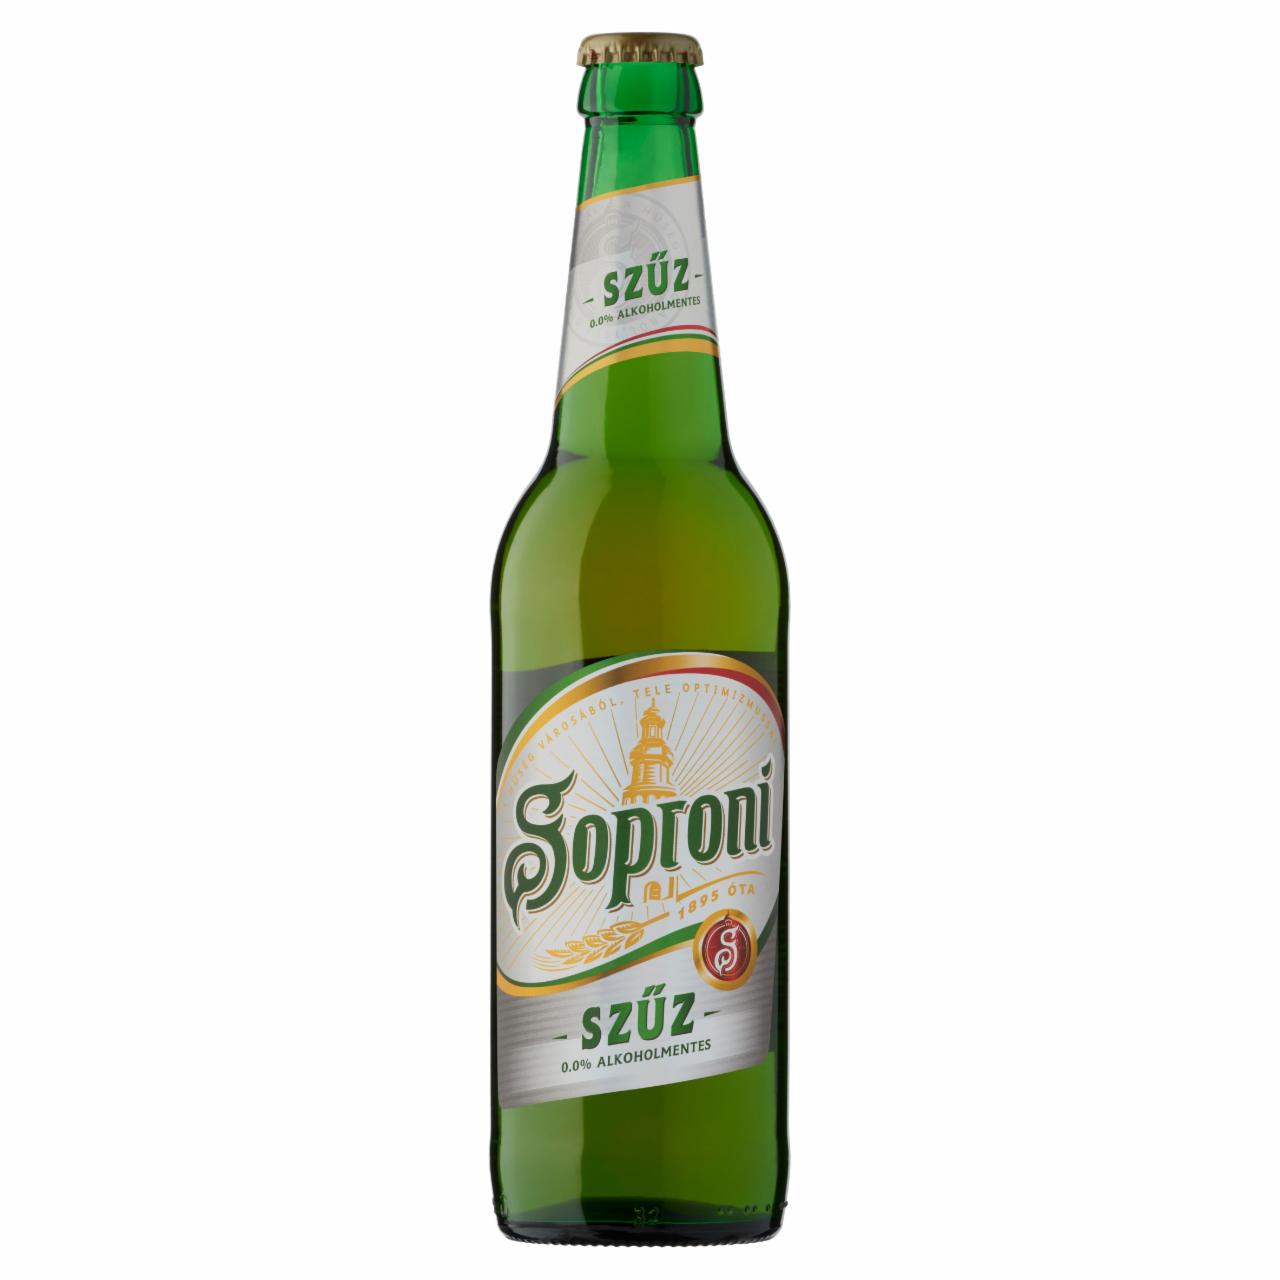 Képek - Soproni Szűz alkoholmentes világos sör 0,5 l üveg